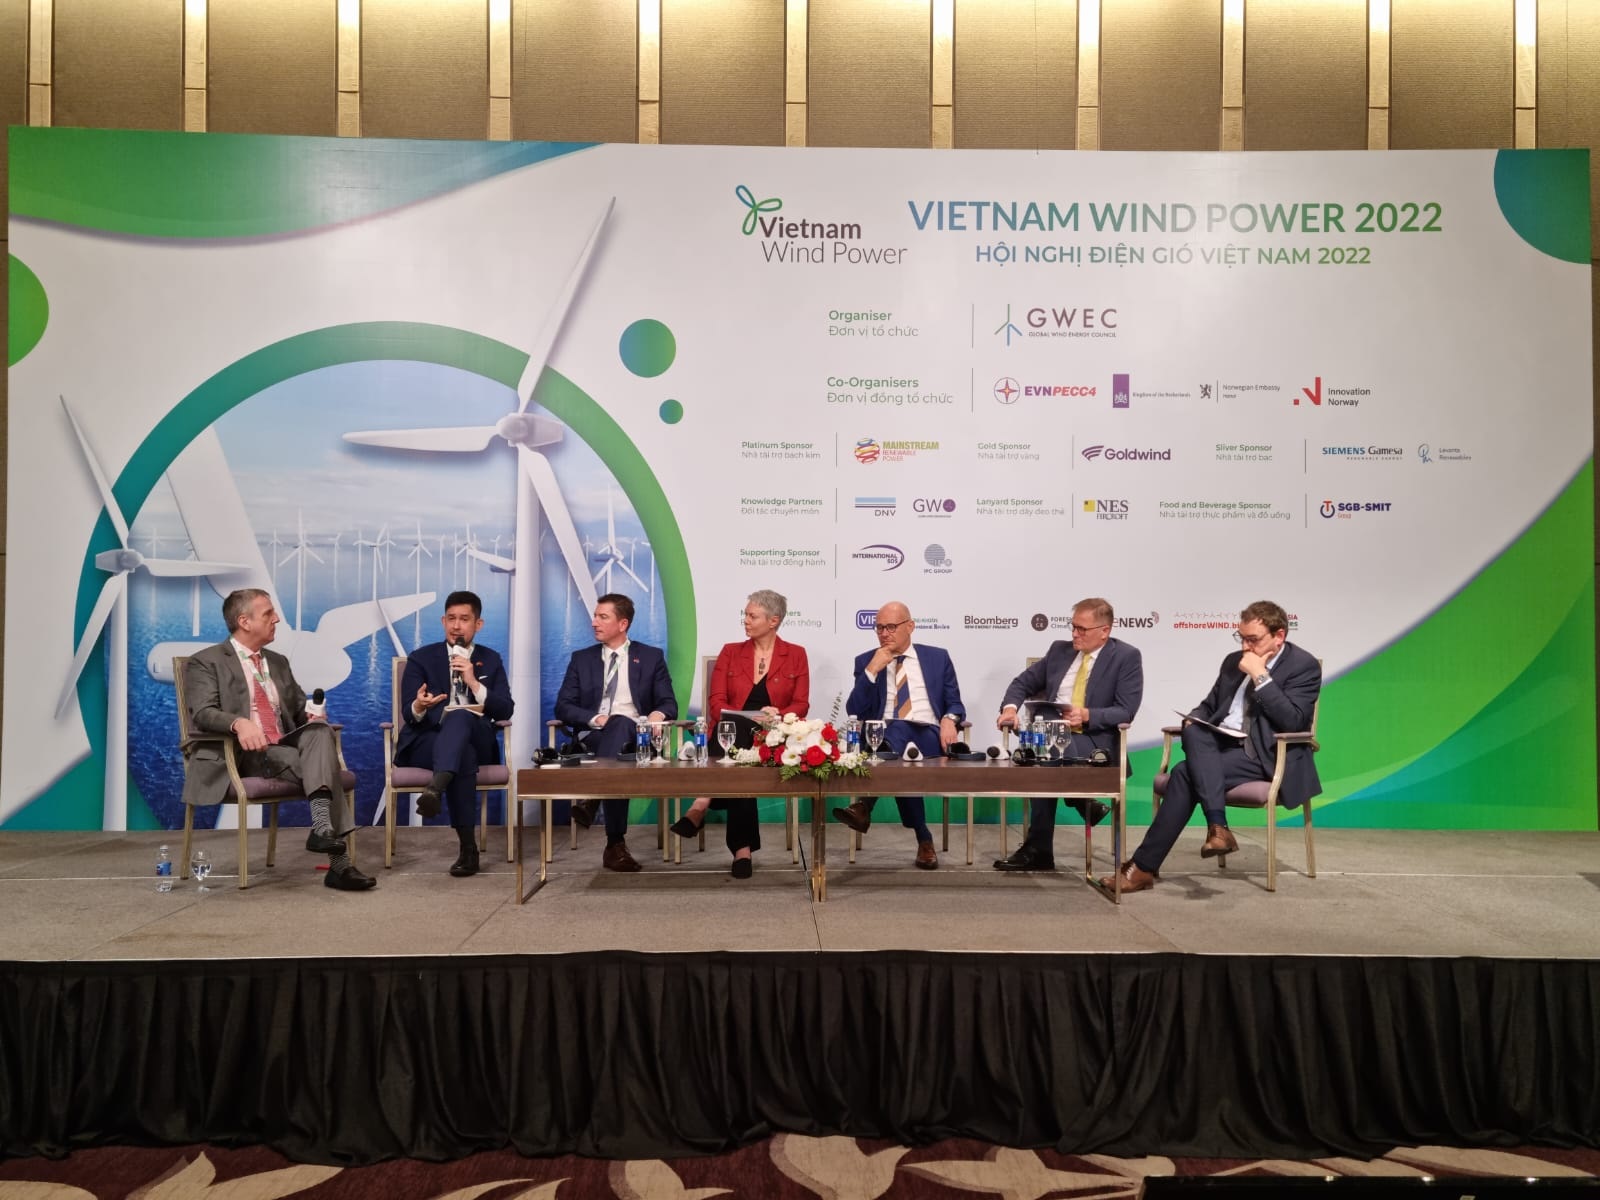 Phát triển năng lượng gió ở Việt Nam: Sao cho đúng tầm